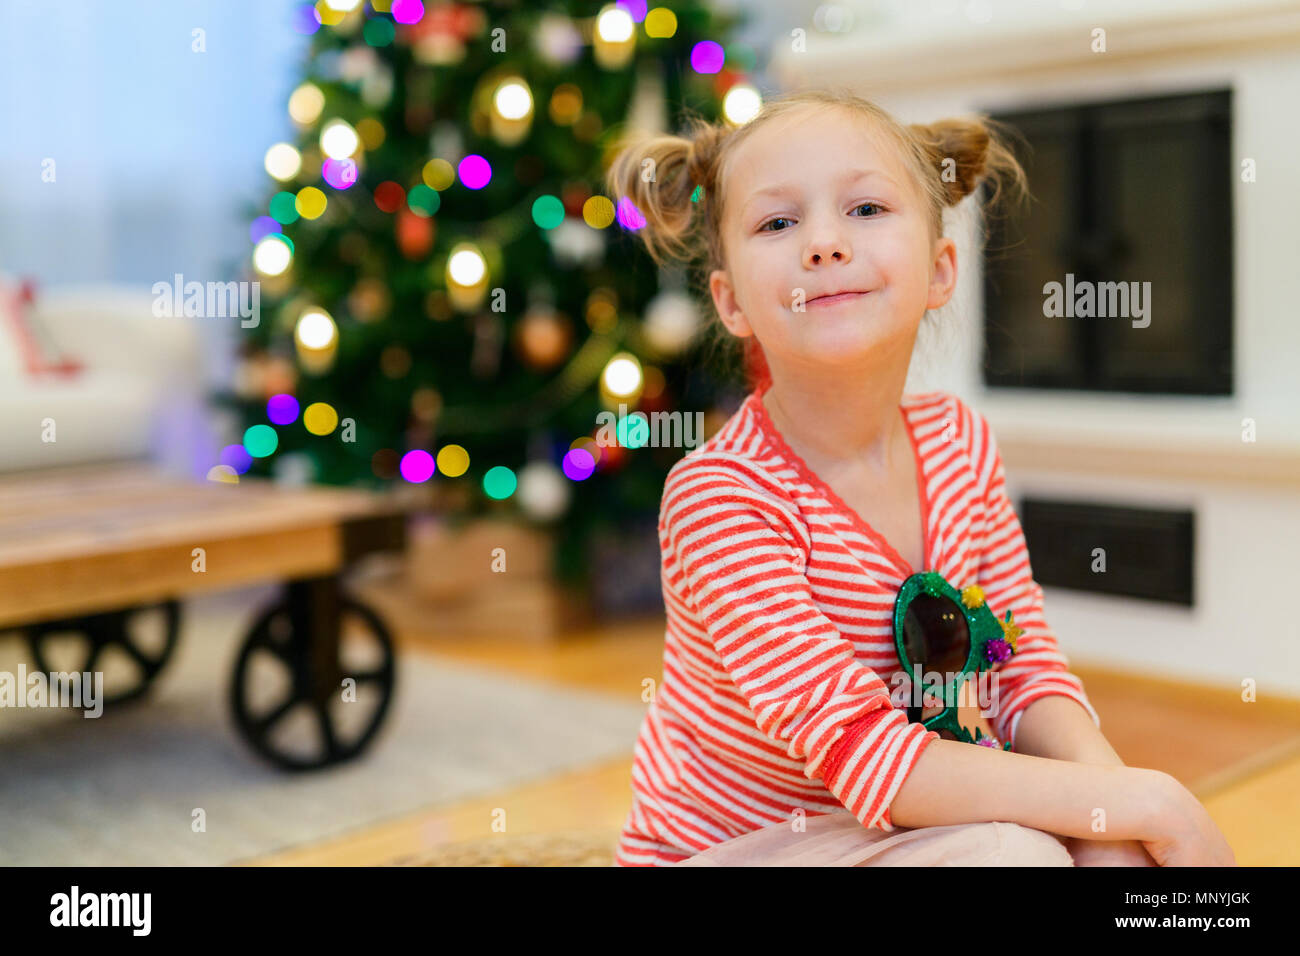 Adorable kleine Mädchen zu Hause schön für Weihnachten mit Kamin, Baum, Strümpfe und Lichtern geschmückt Stockfoto